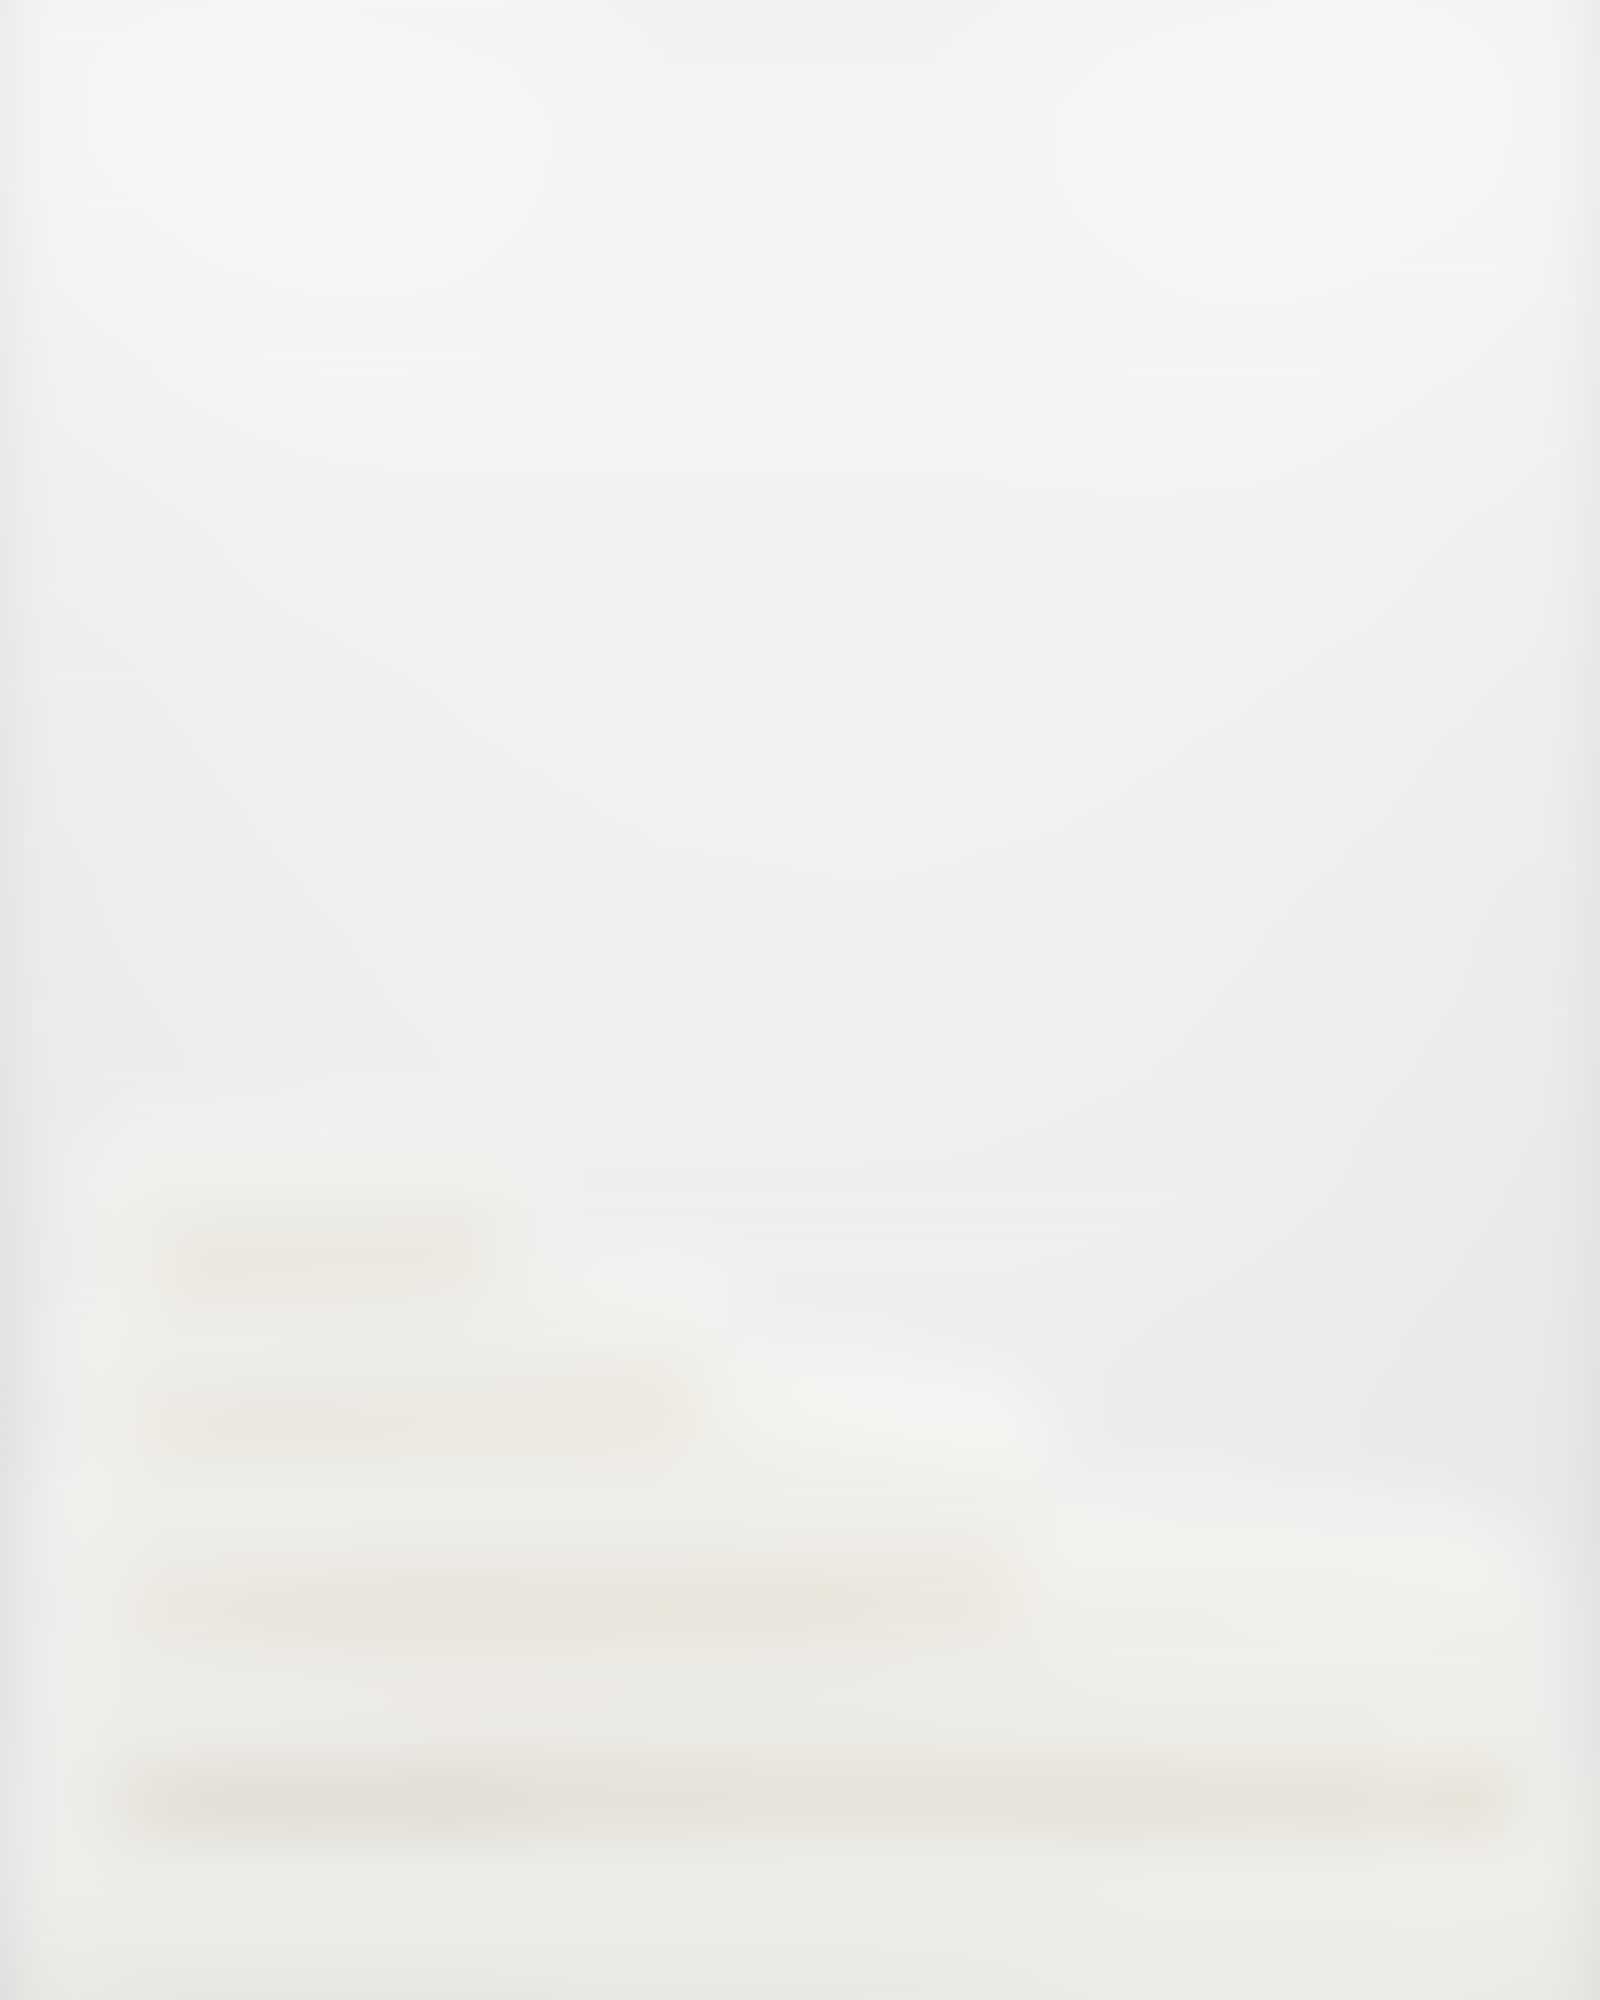 Möve - Superwuschel - Farbe: snow - 001 (0-1725/8775) - Duschtuch 80x150 cm Detailbild 3